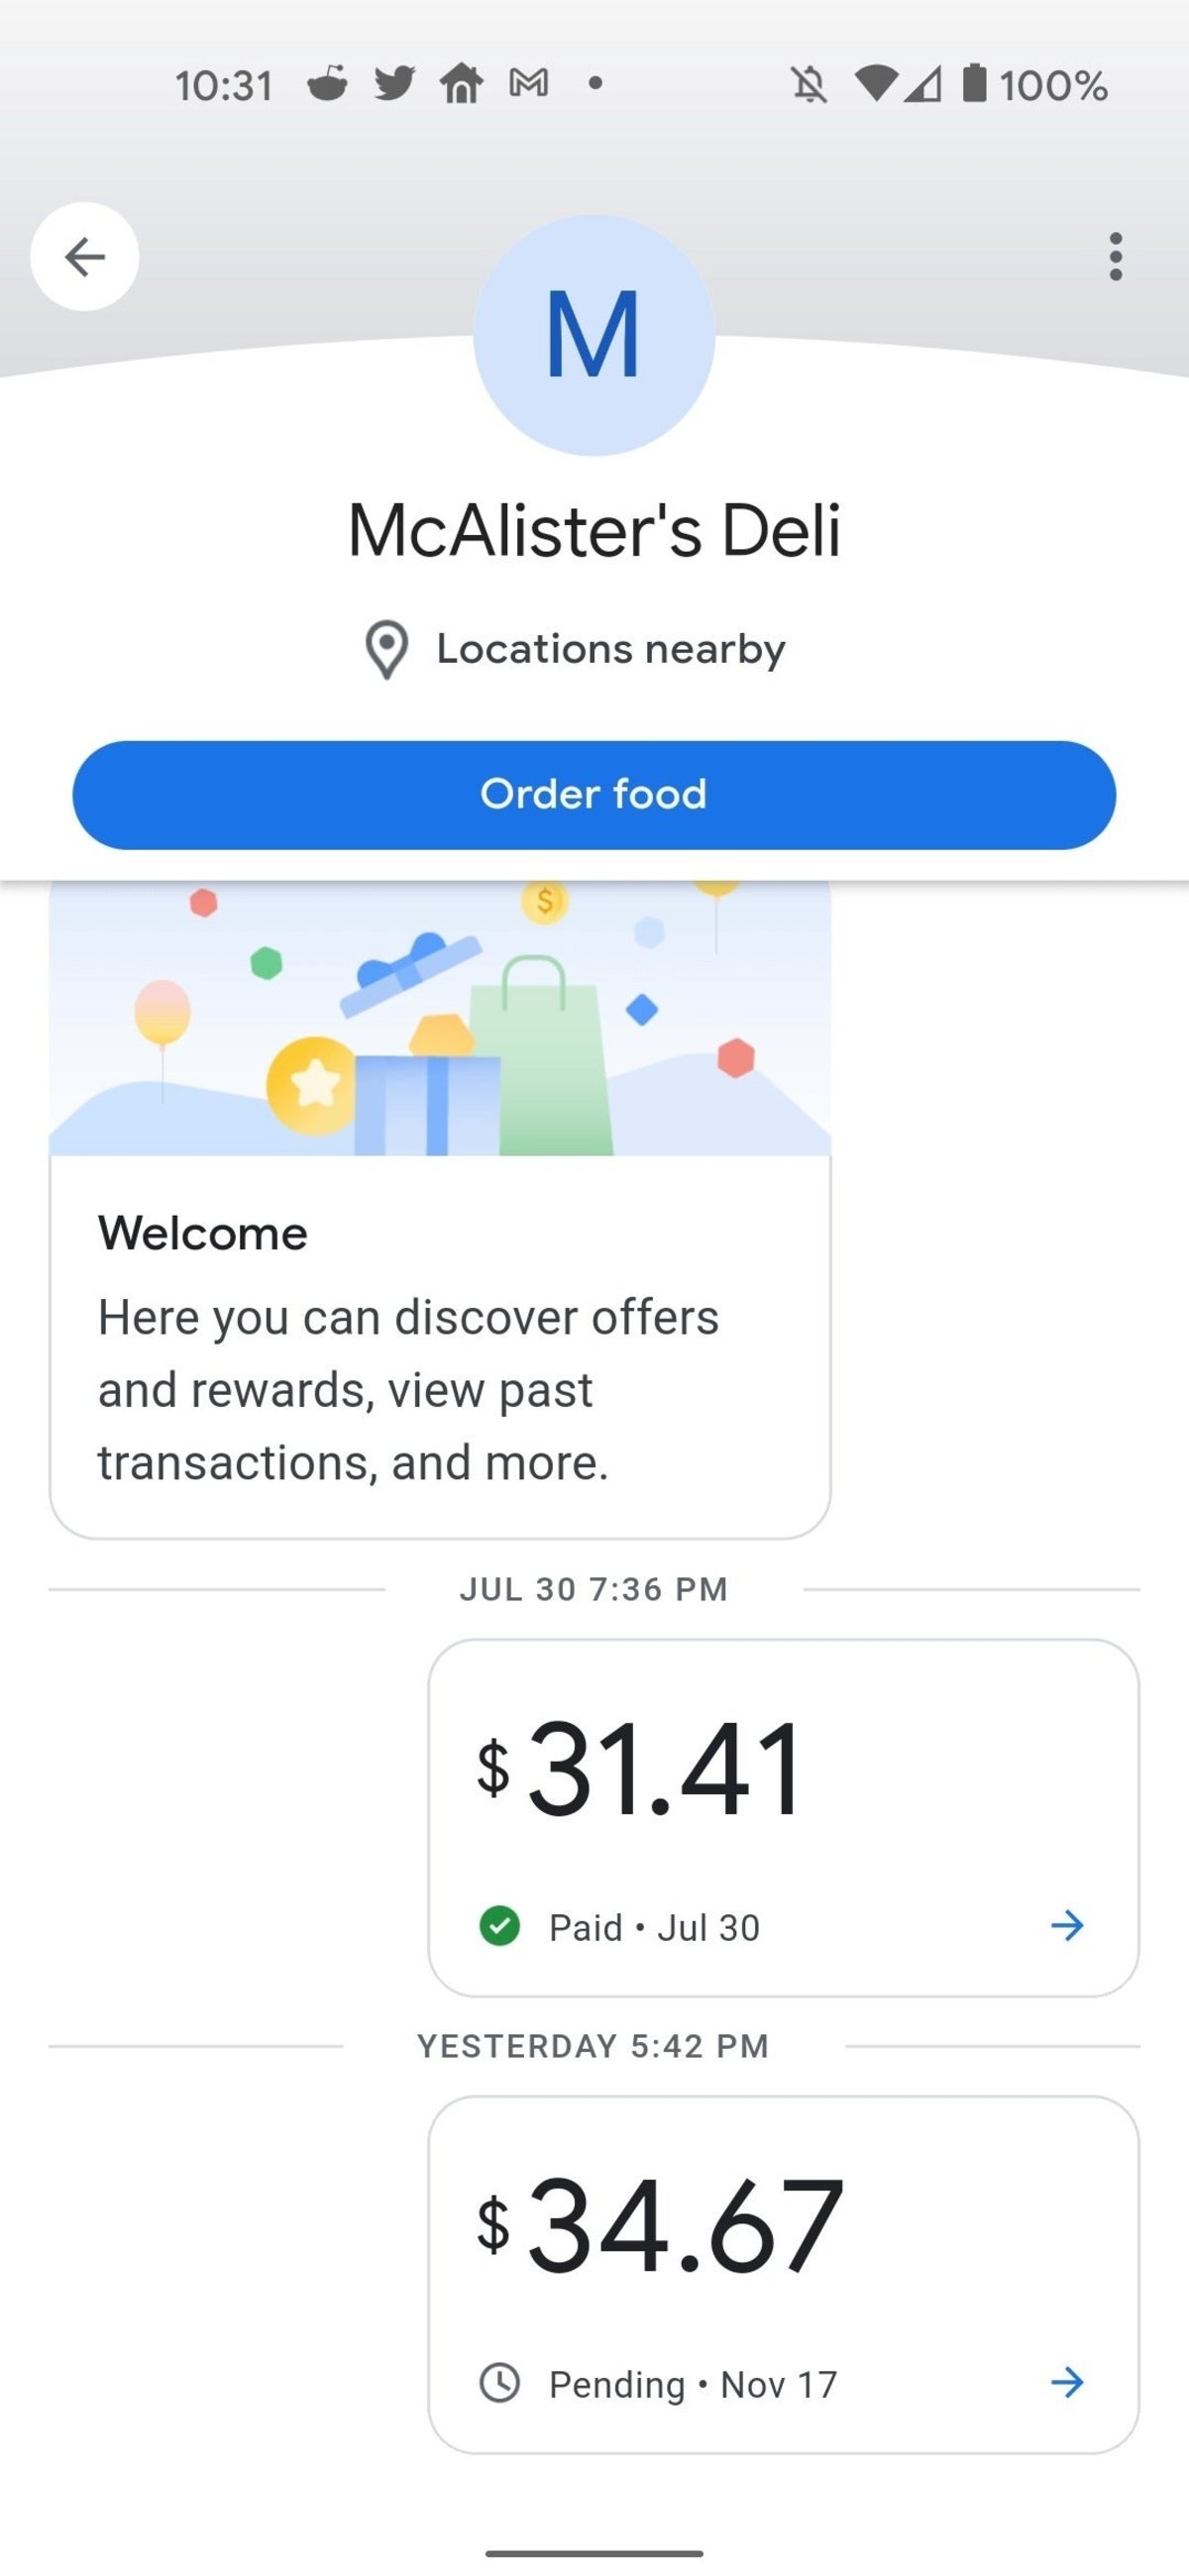 El nuevo Google Pay ya es oficial: ahora con recompensas, pagos entre particulares y más